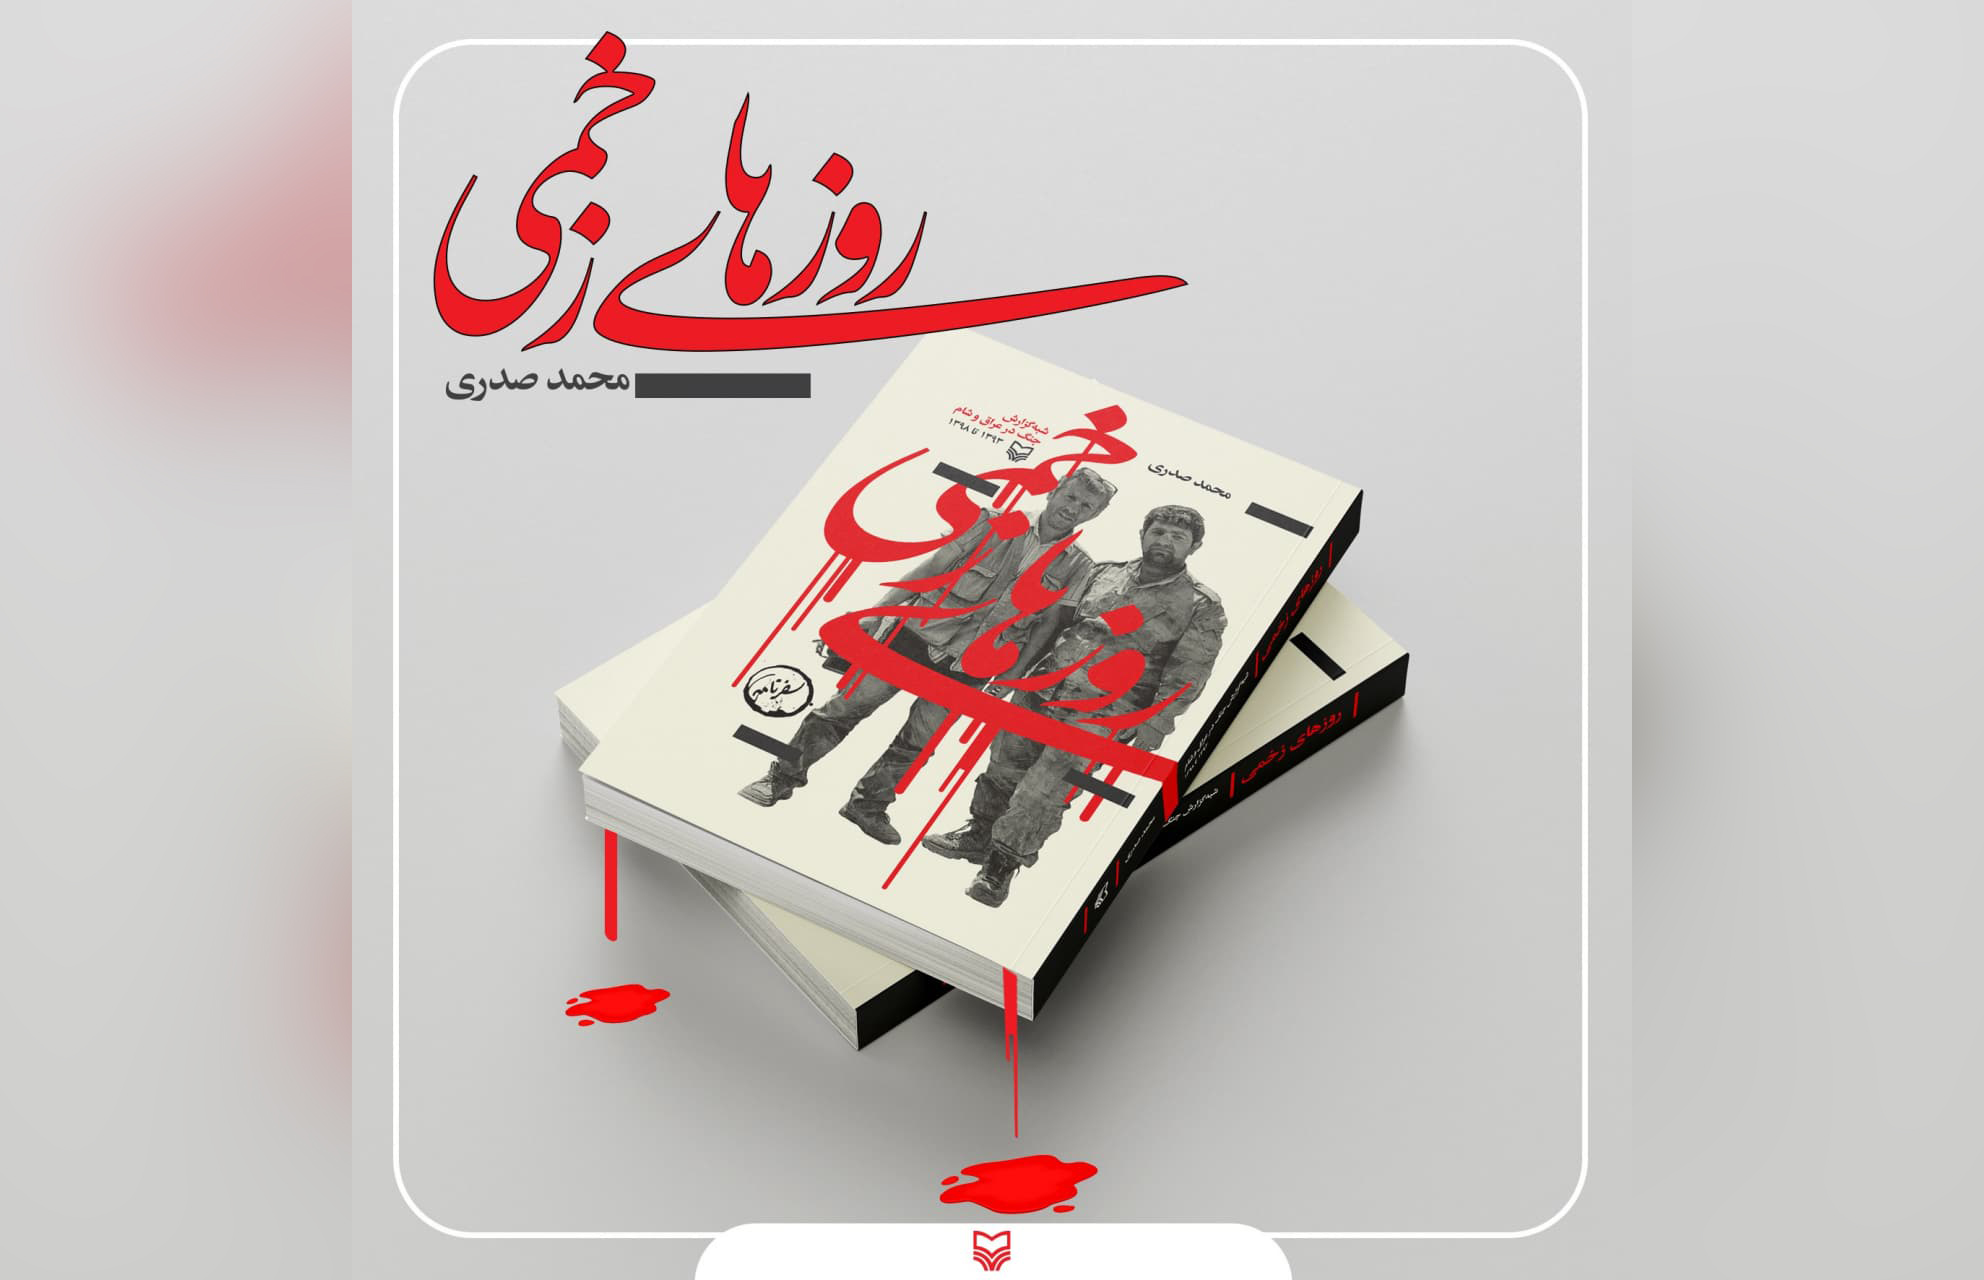 سوره مهر کتاب «روزهای زخمی» به قلم محمد صدری را منتشر کرد